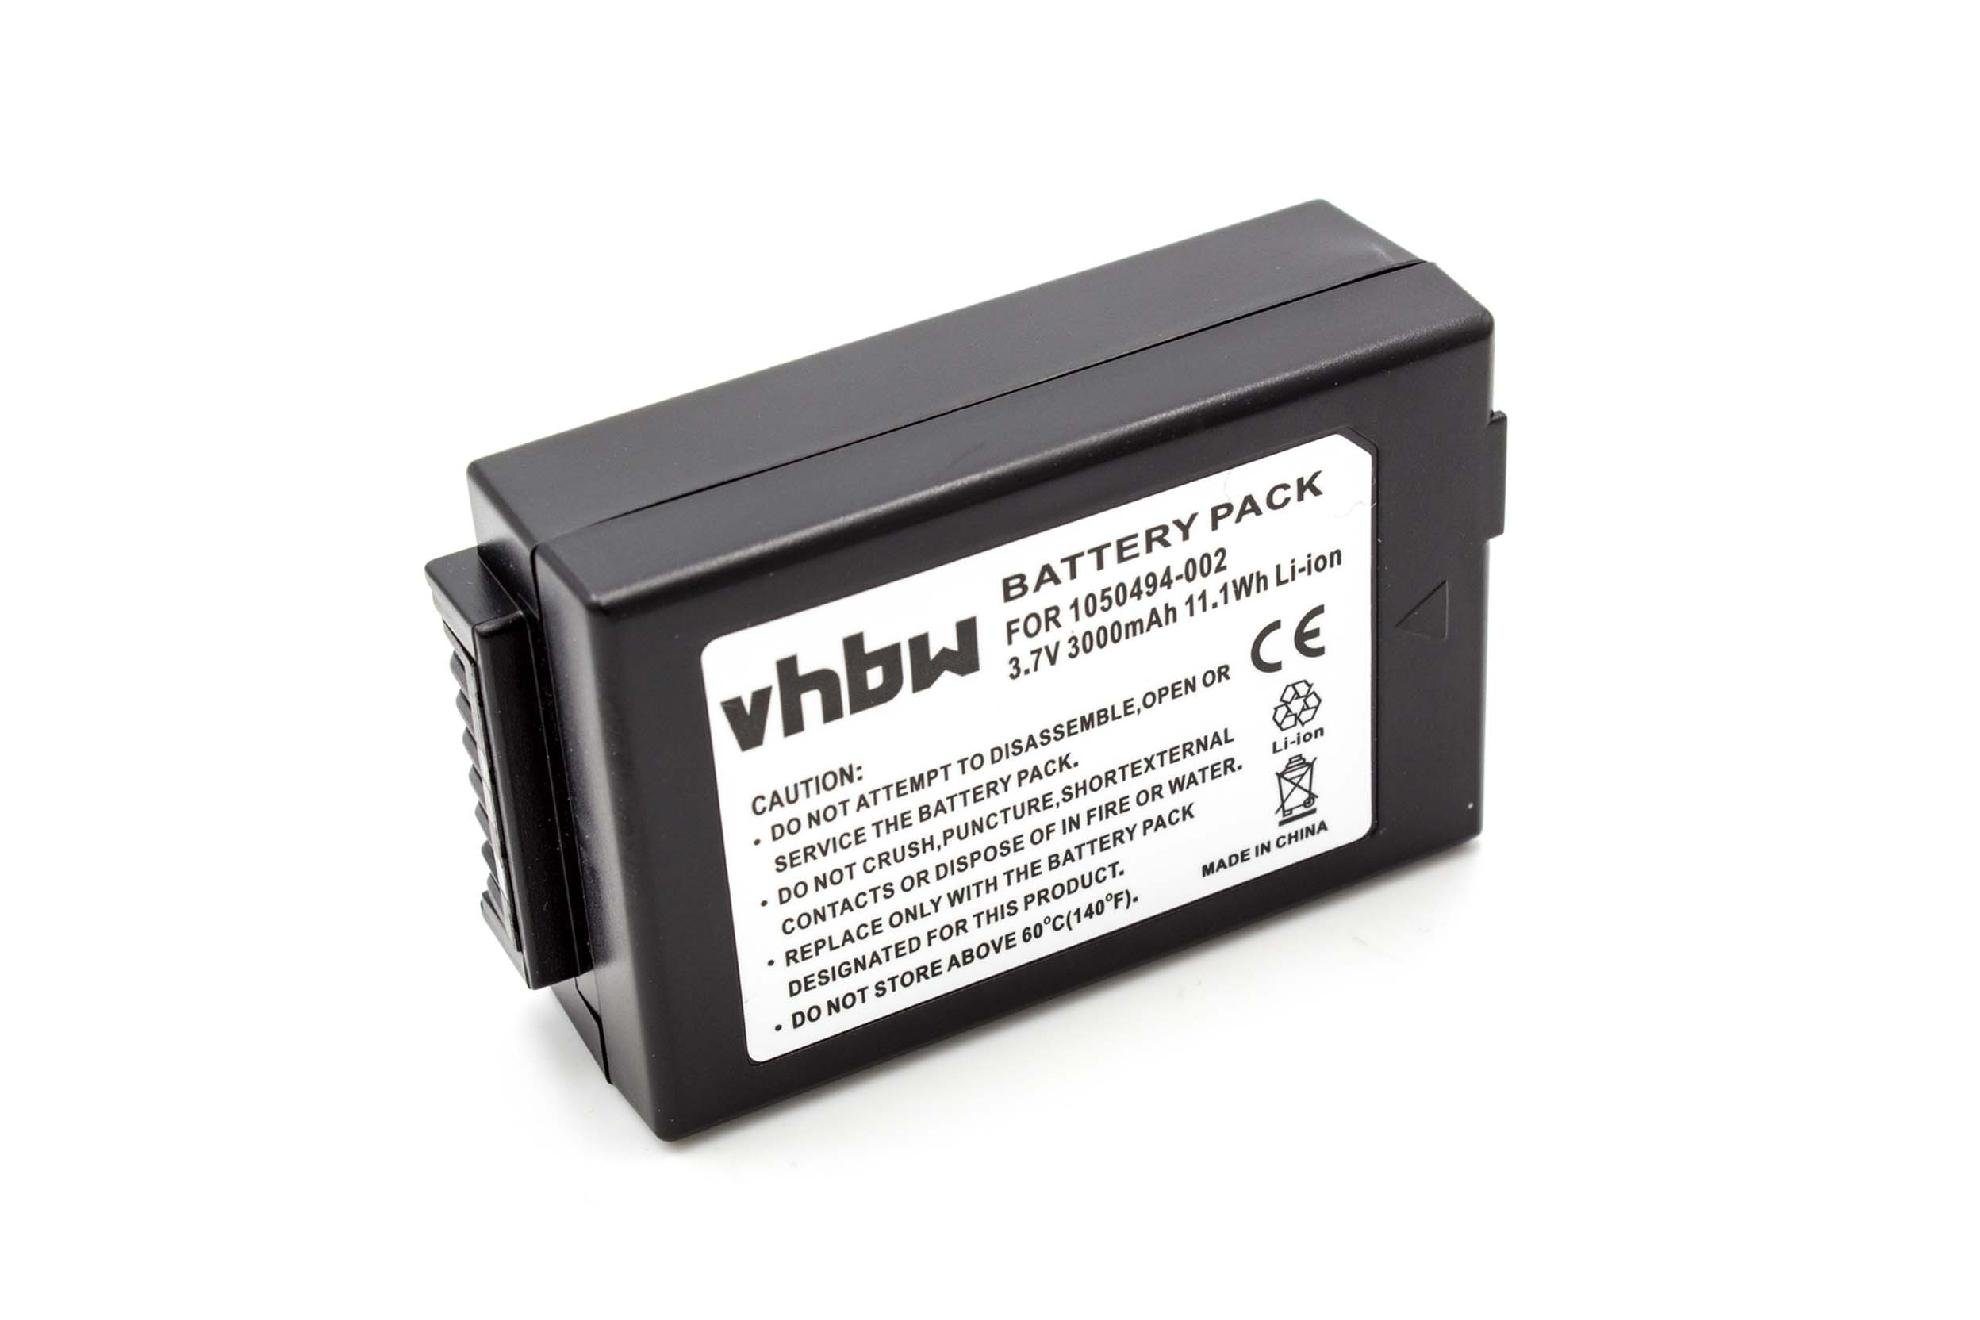 Ersatz Business Baugleiche Barcode vhbw WA3020 & & für Scanner Li-Ion) mAh 3,7V, Industrie Psion 2000 Akku Funk (2000mAh, Originalteilebezeichnung für